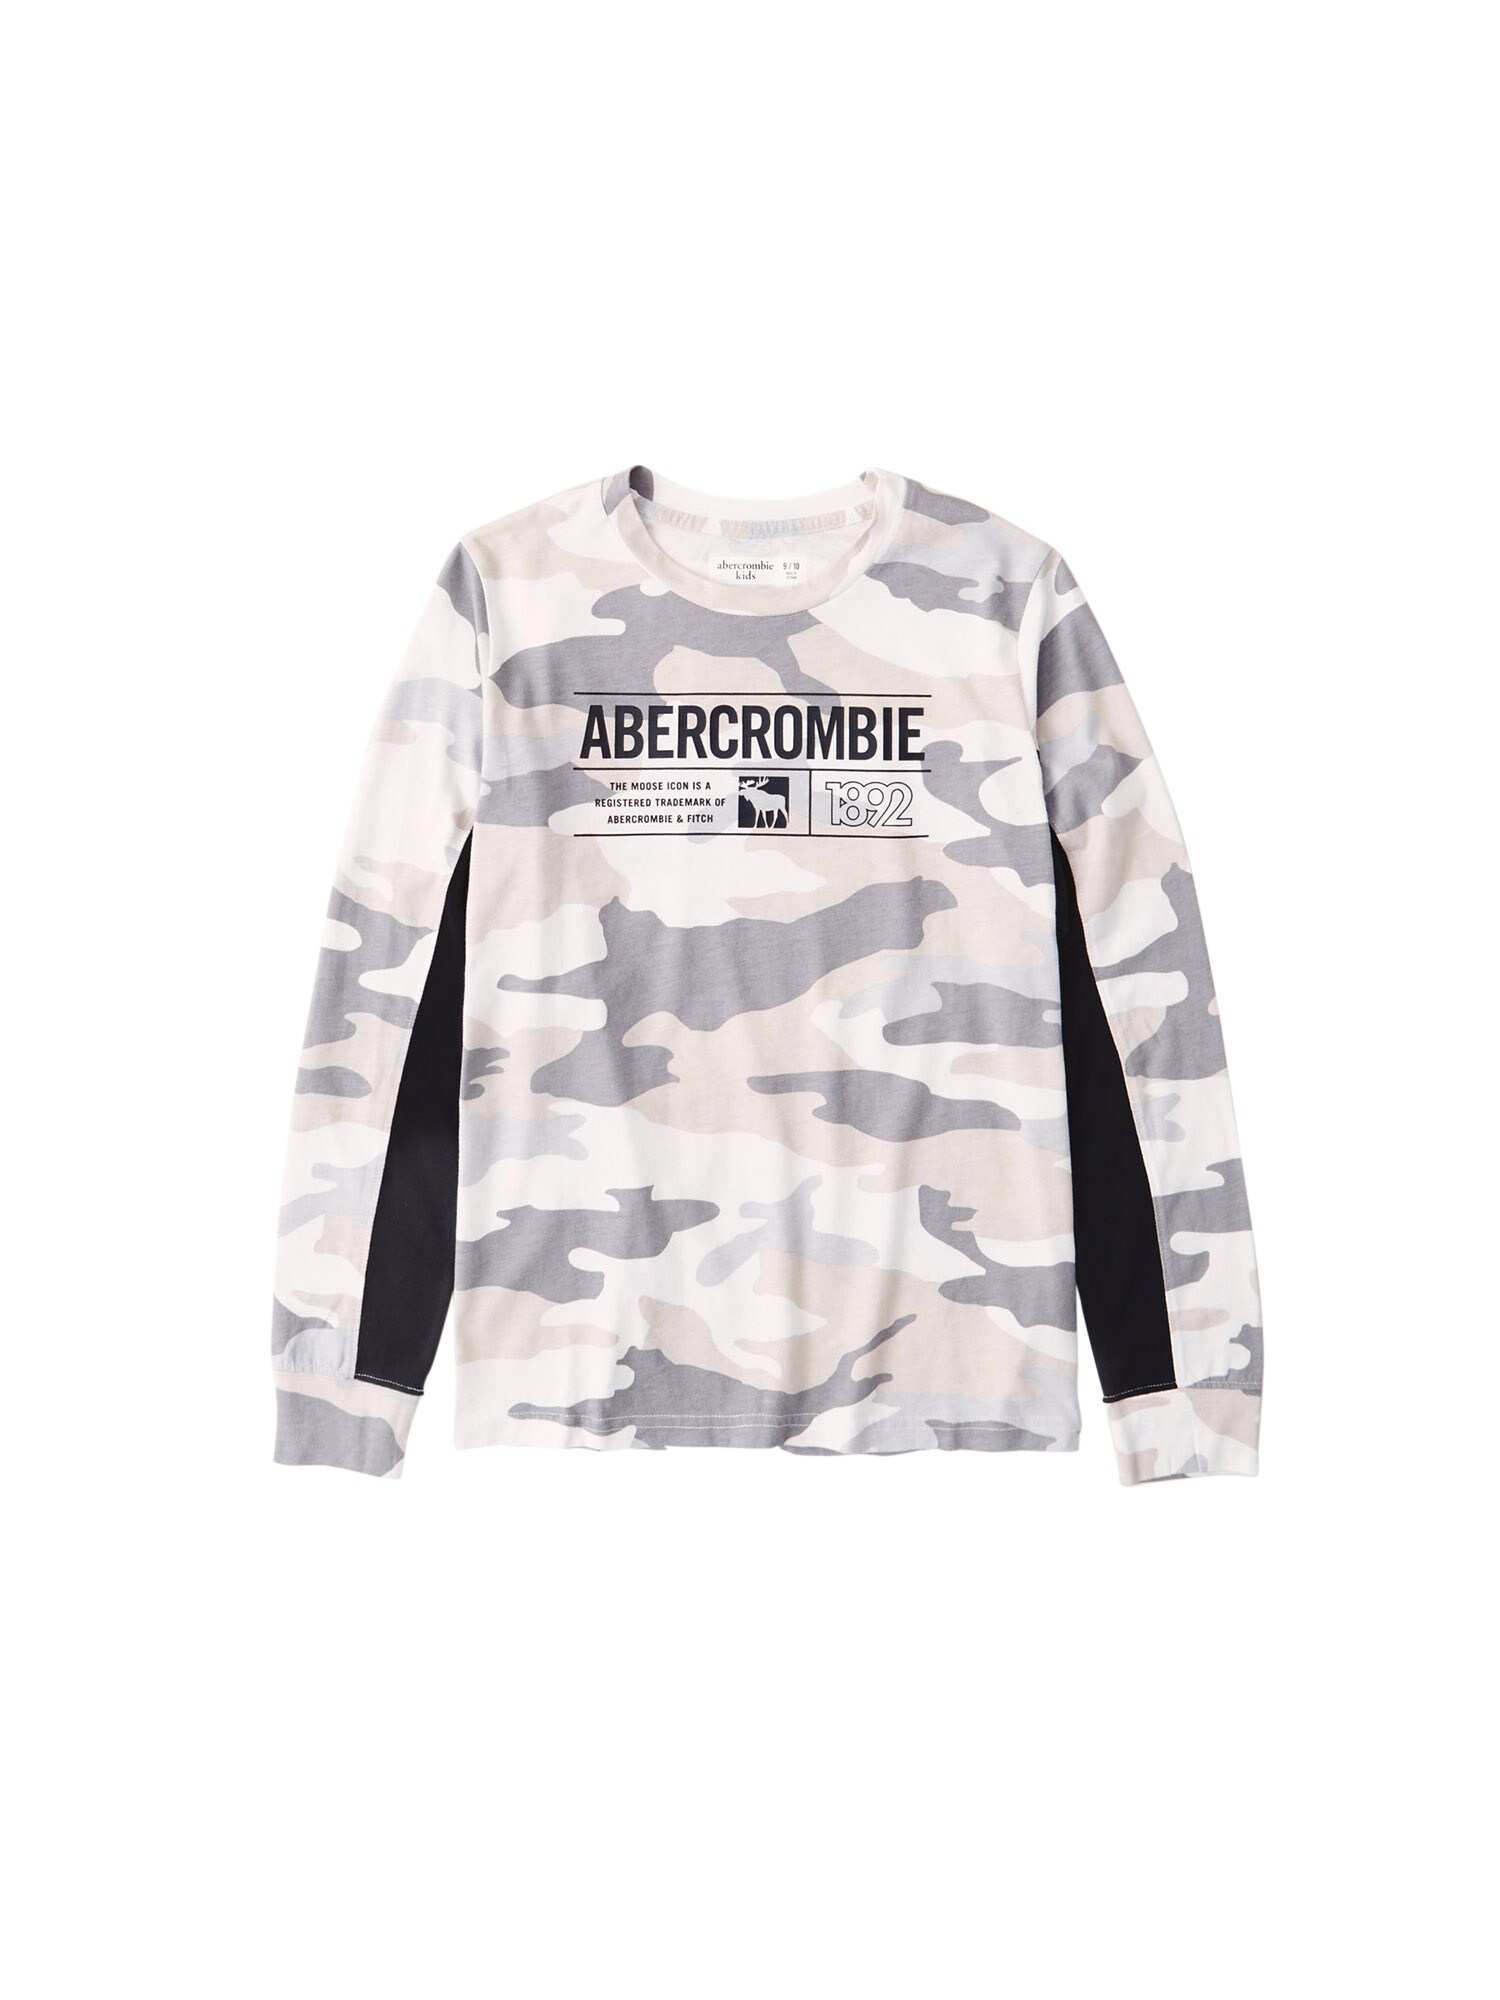 Abercrombie & Fitch Marškinėliai  rusvai žalia / pilka / balta